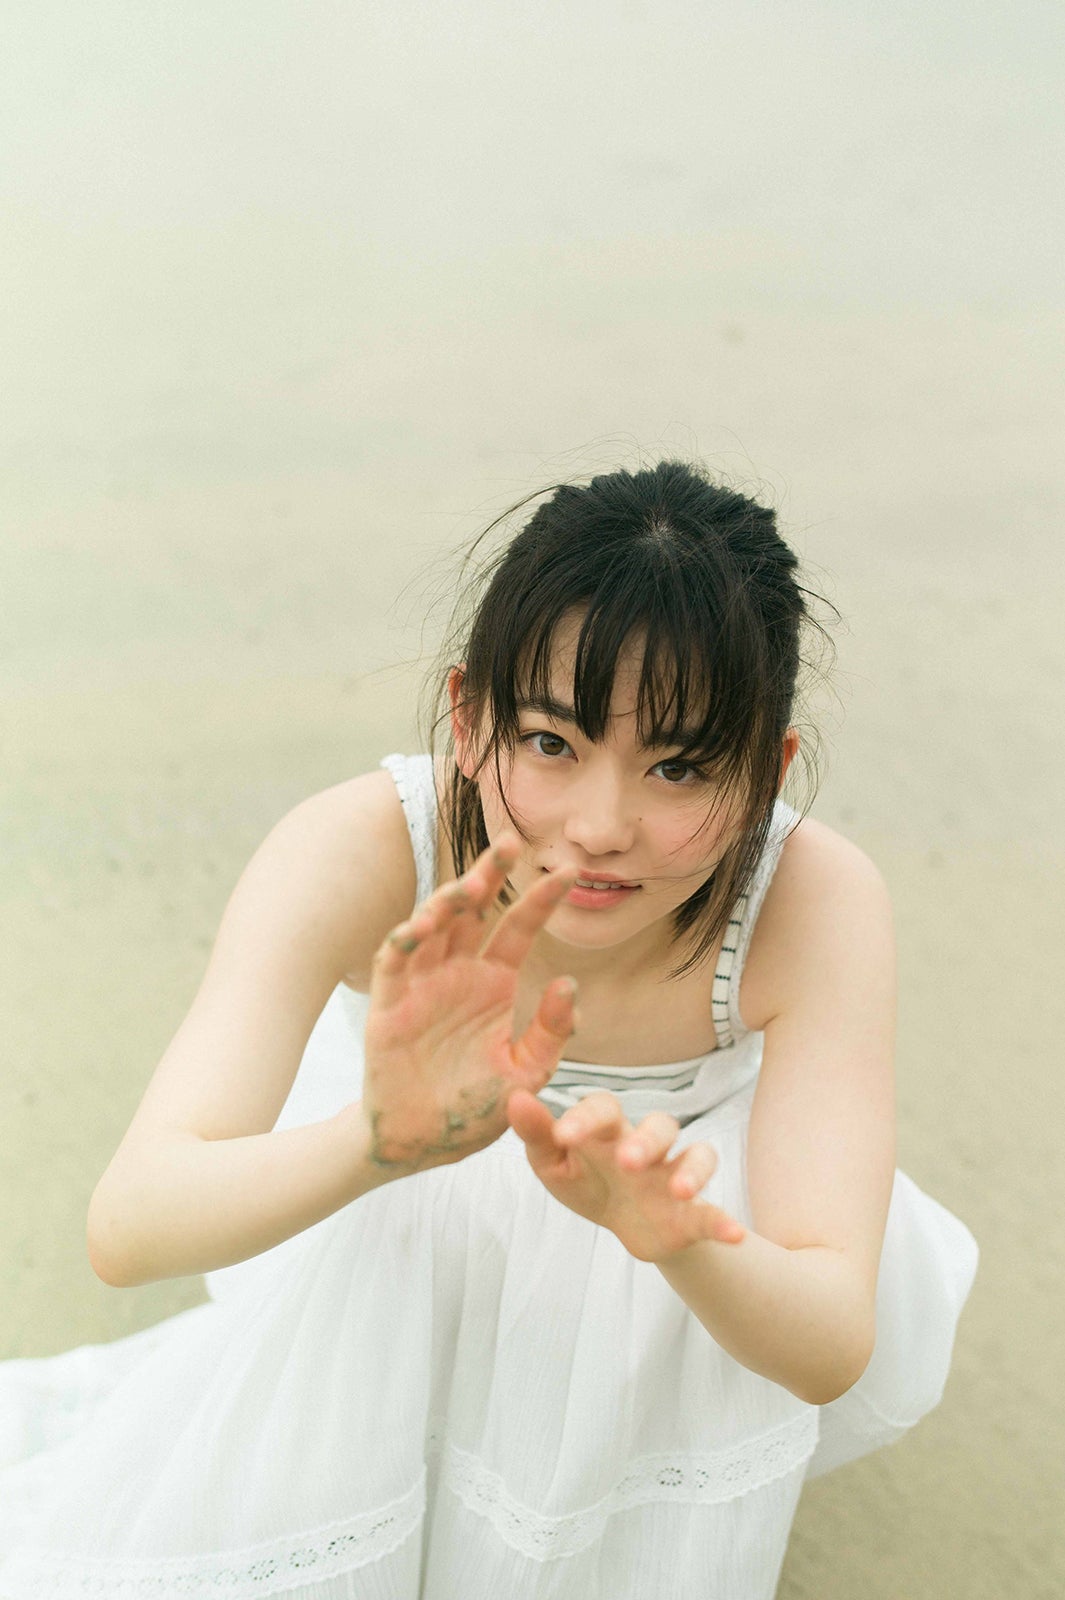 注目の若手女優 山田杏奈 初水着撮影に挑戦 透明感あふれる素肌で